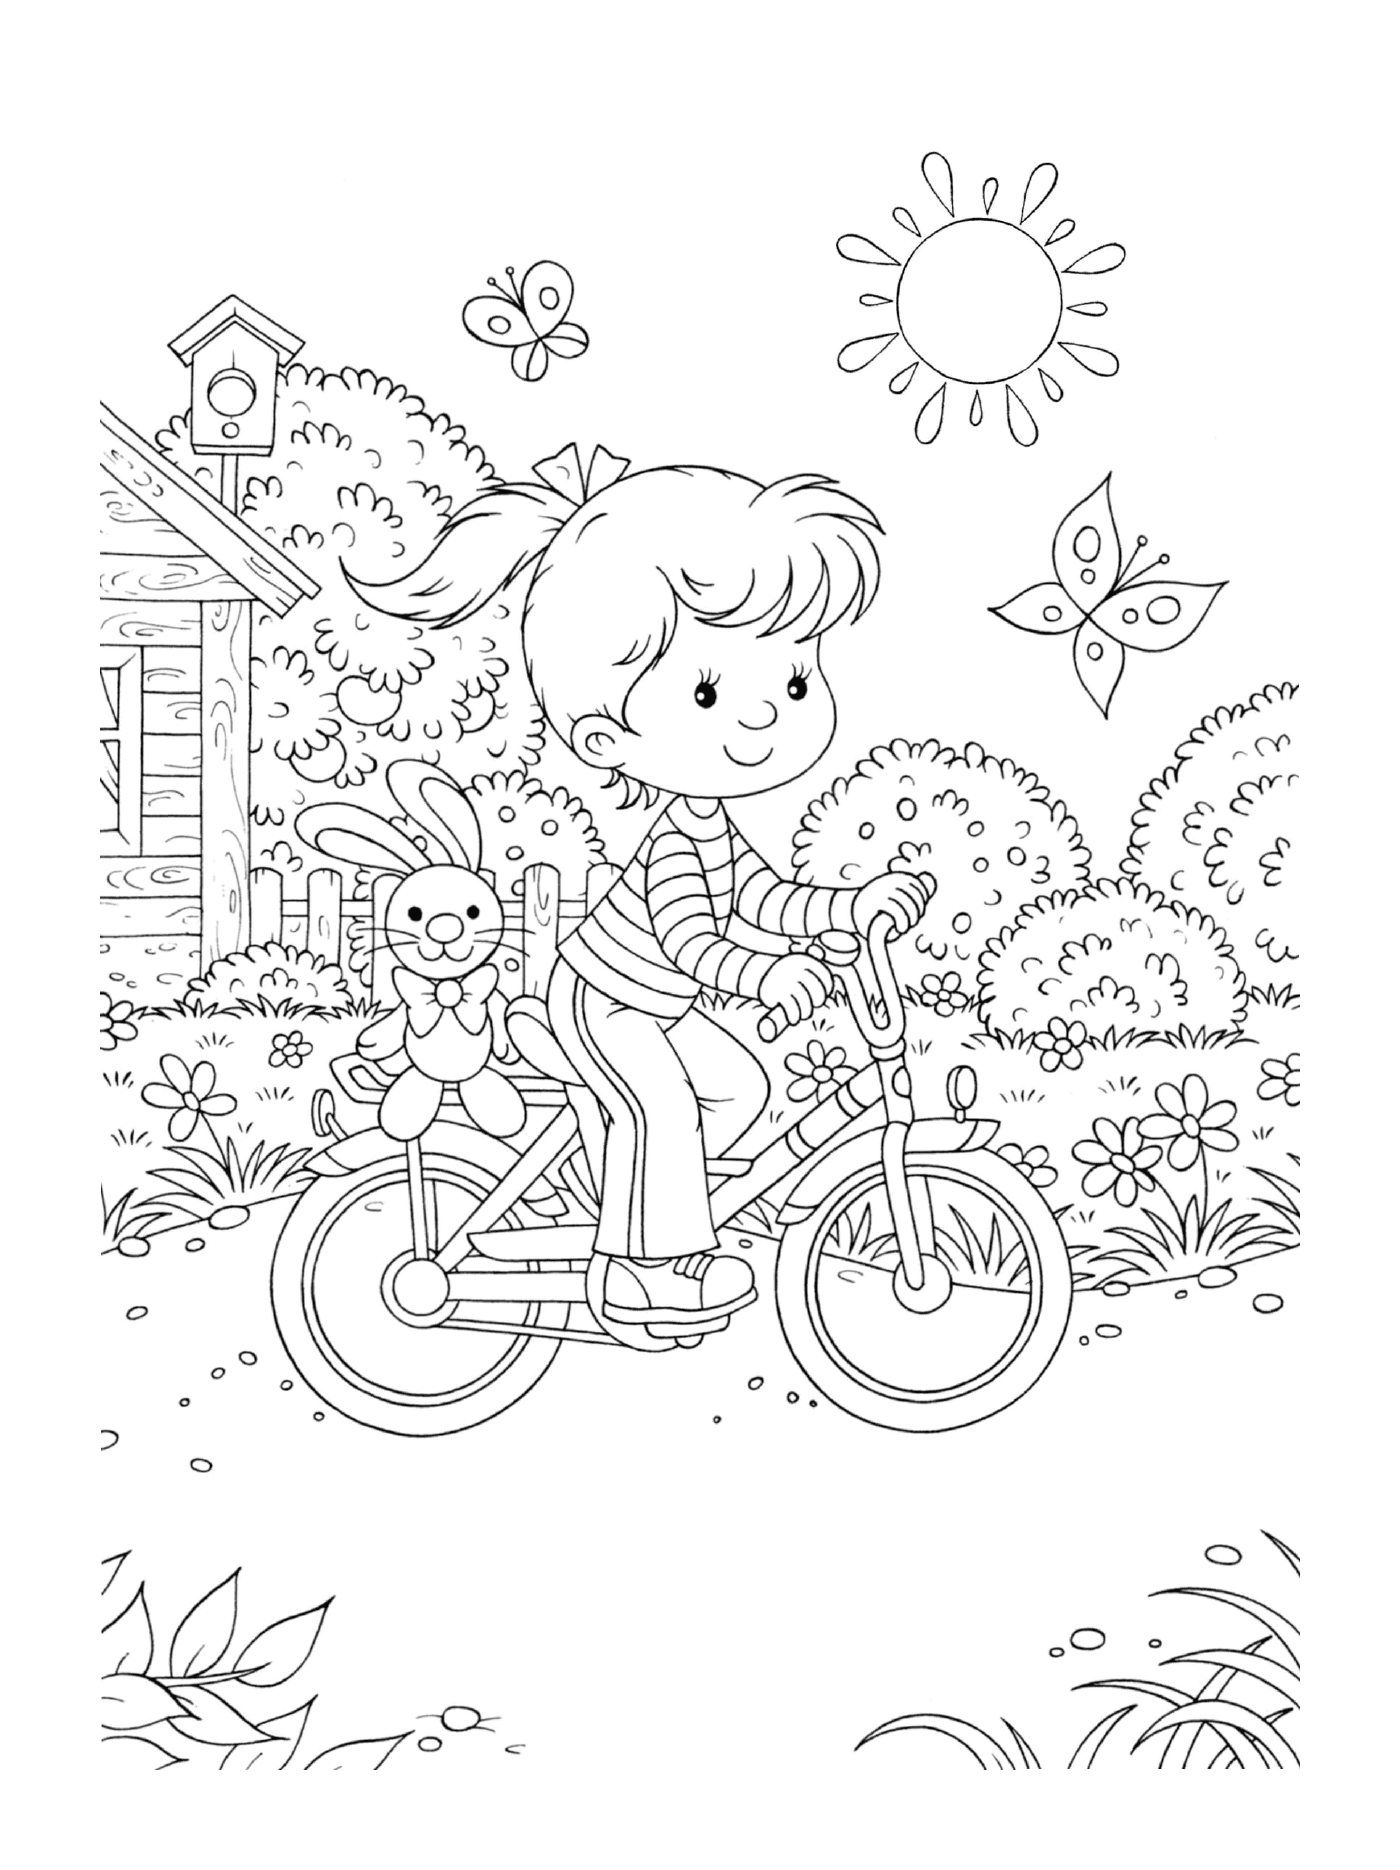  Маленькая девочка катается на велосипеде с кроликом сзади 